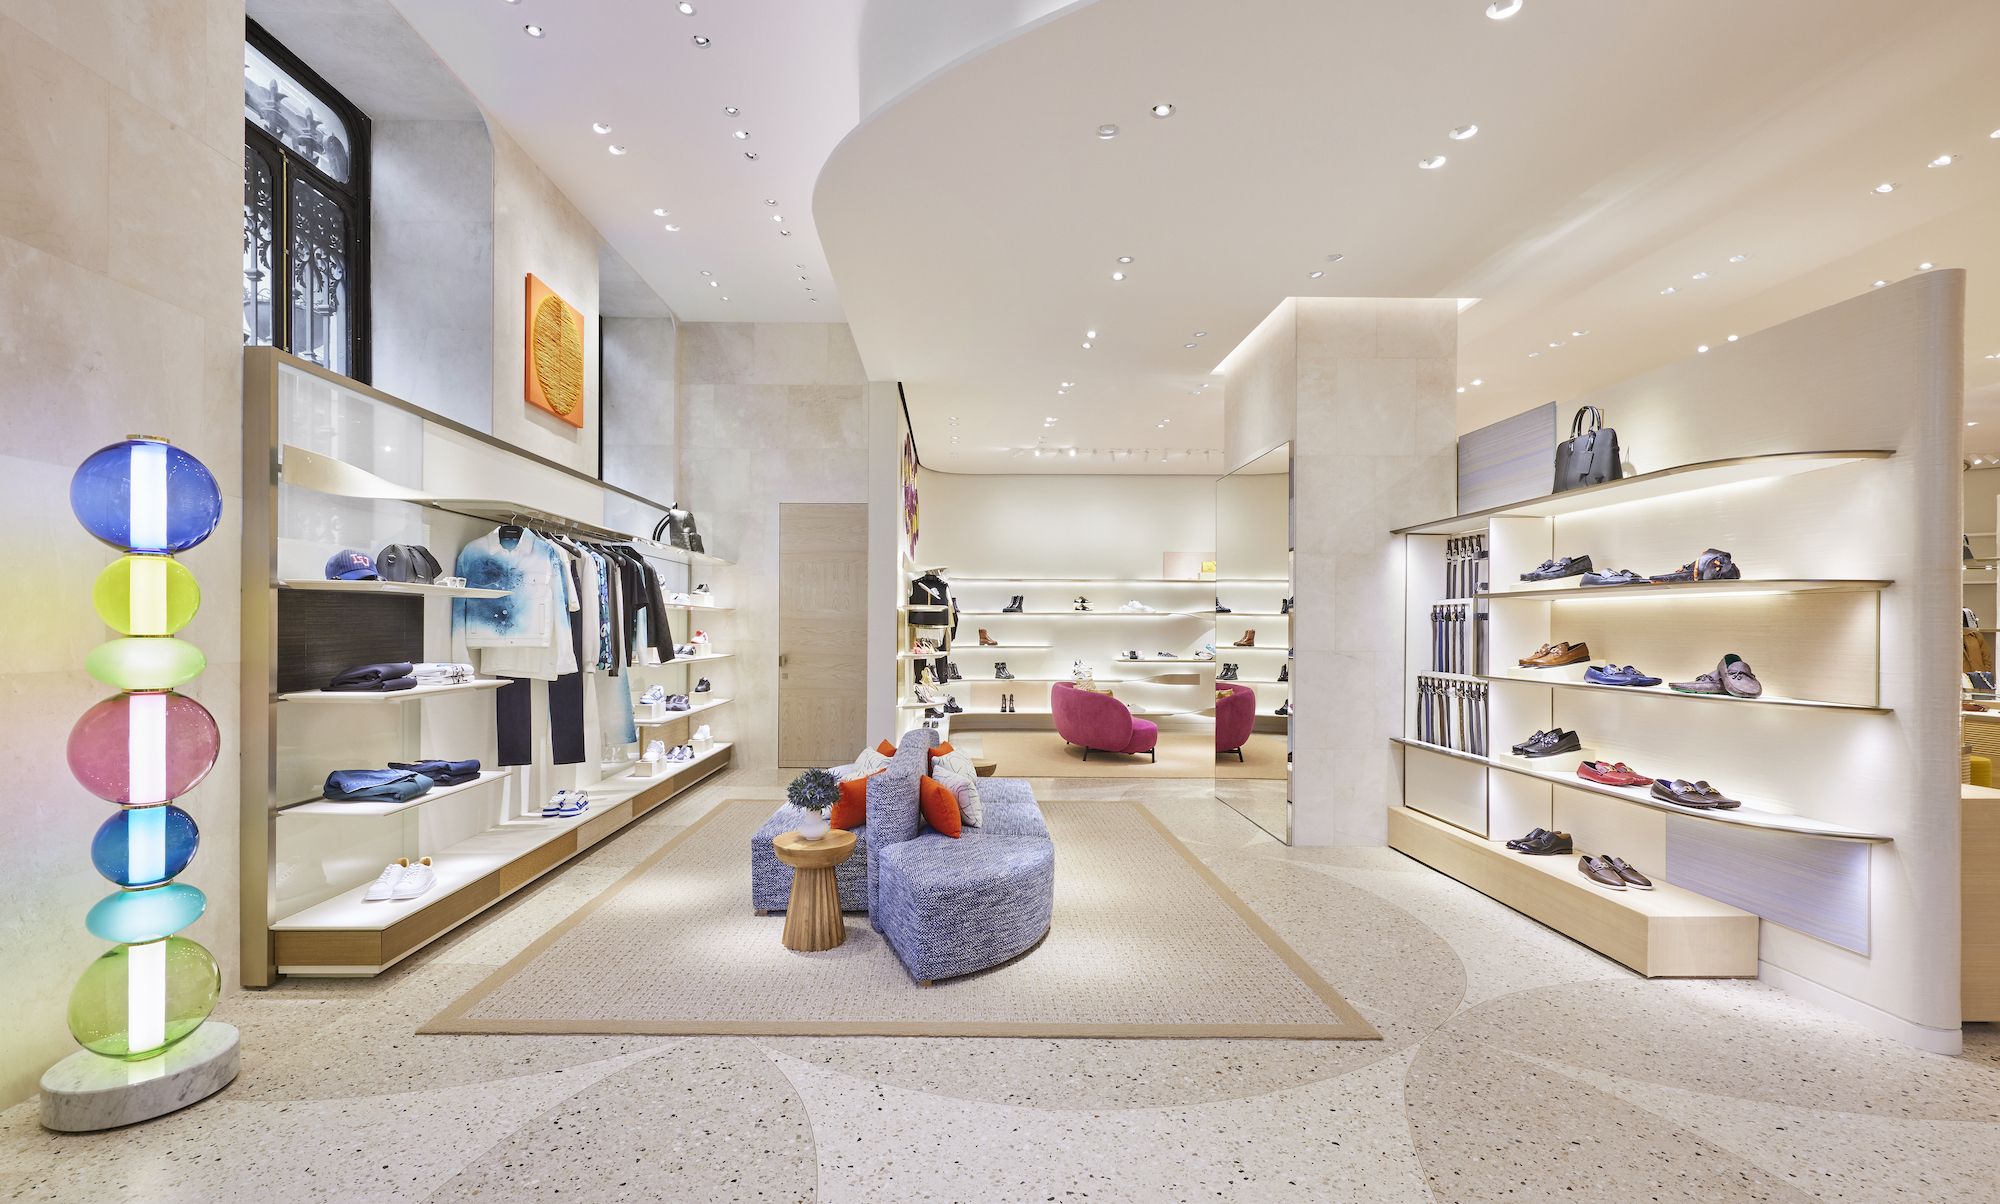 Reabre la tienda de Louis Vuitton de El Corte Inglés de Madrid